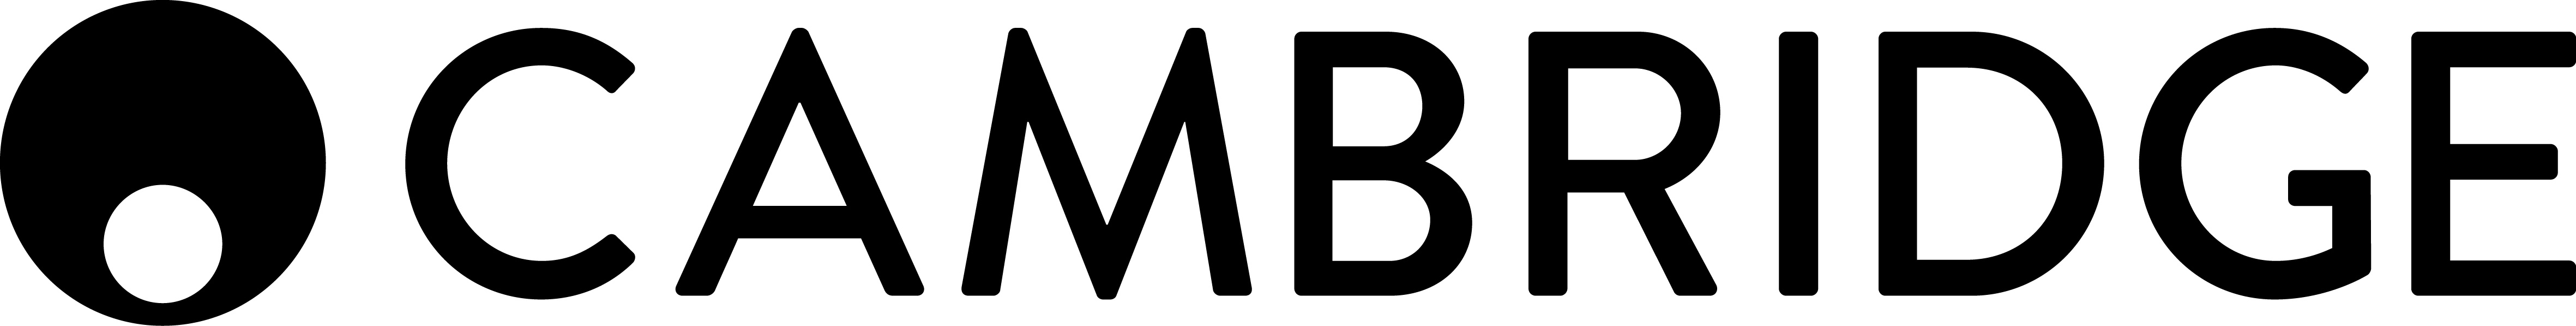 cambridge-logo-2014